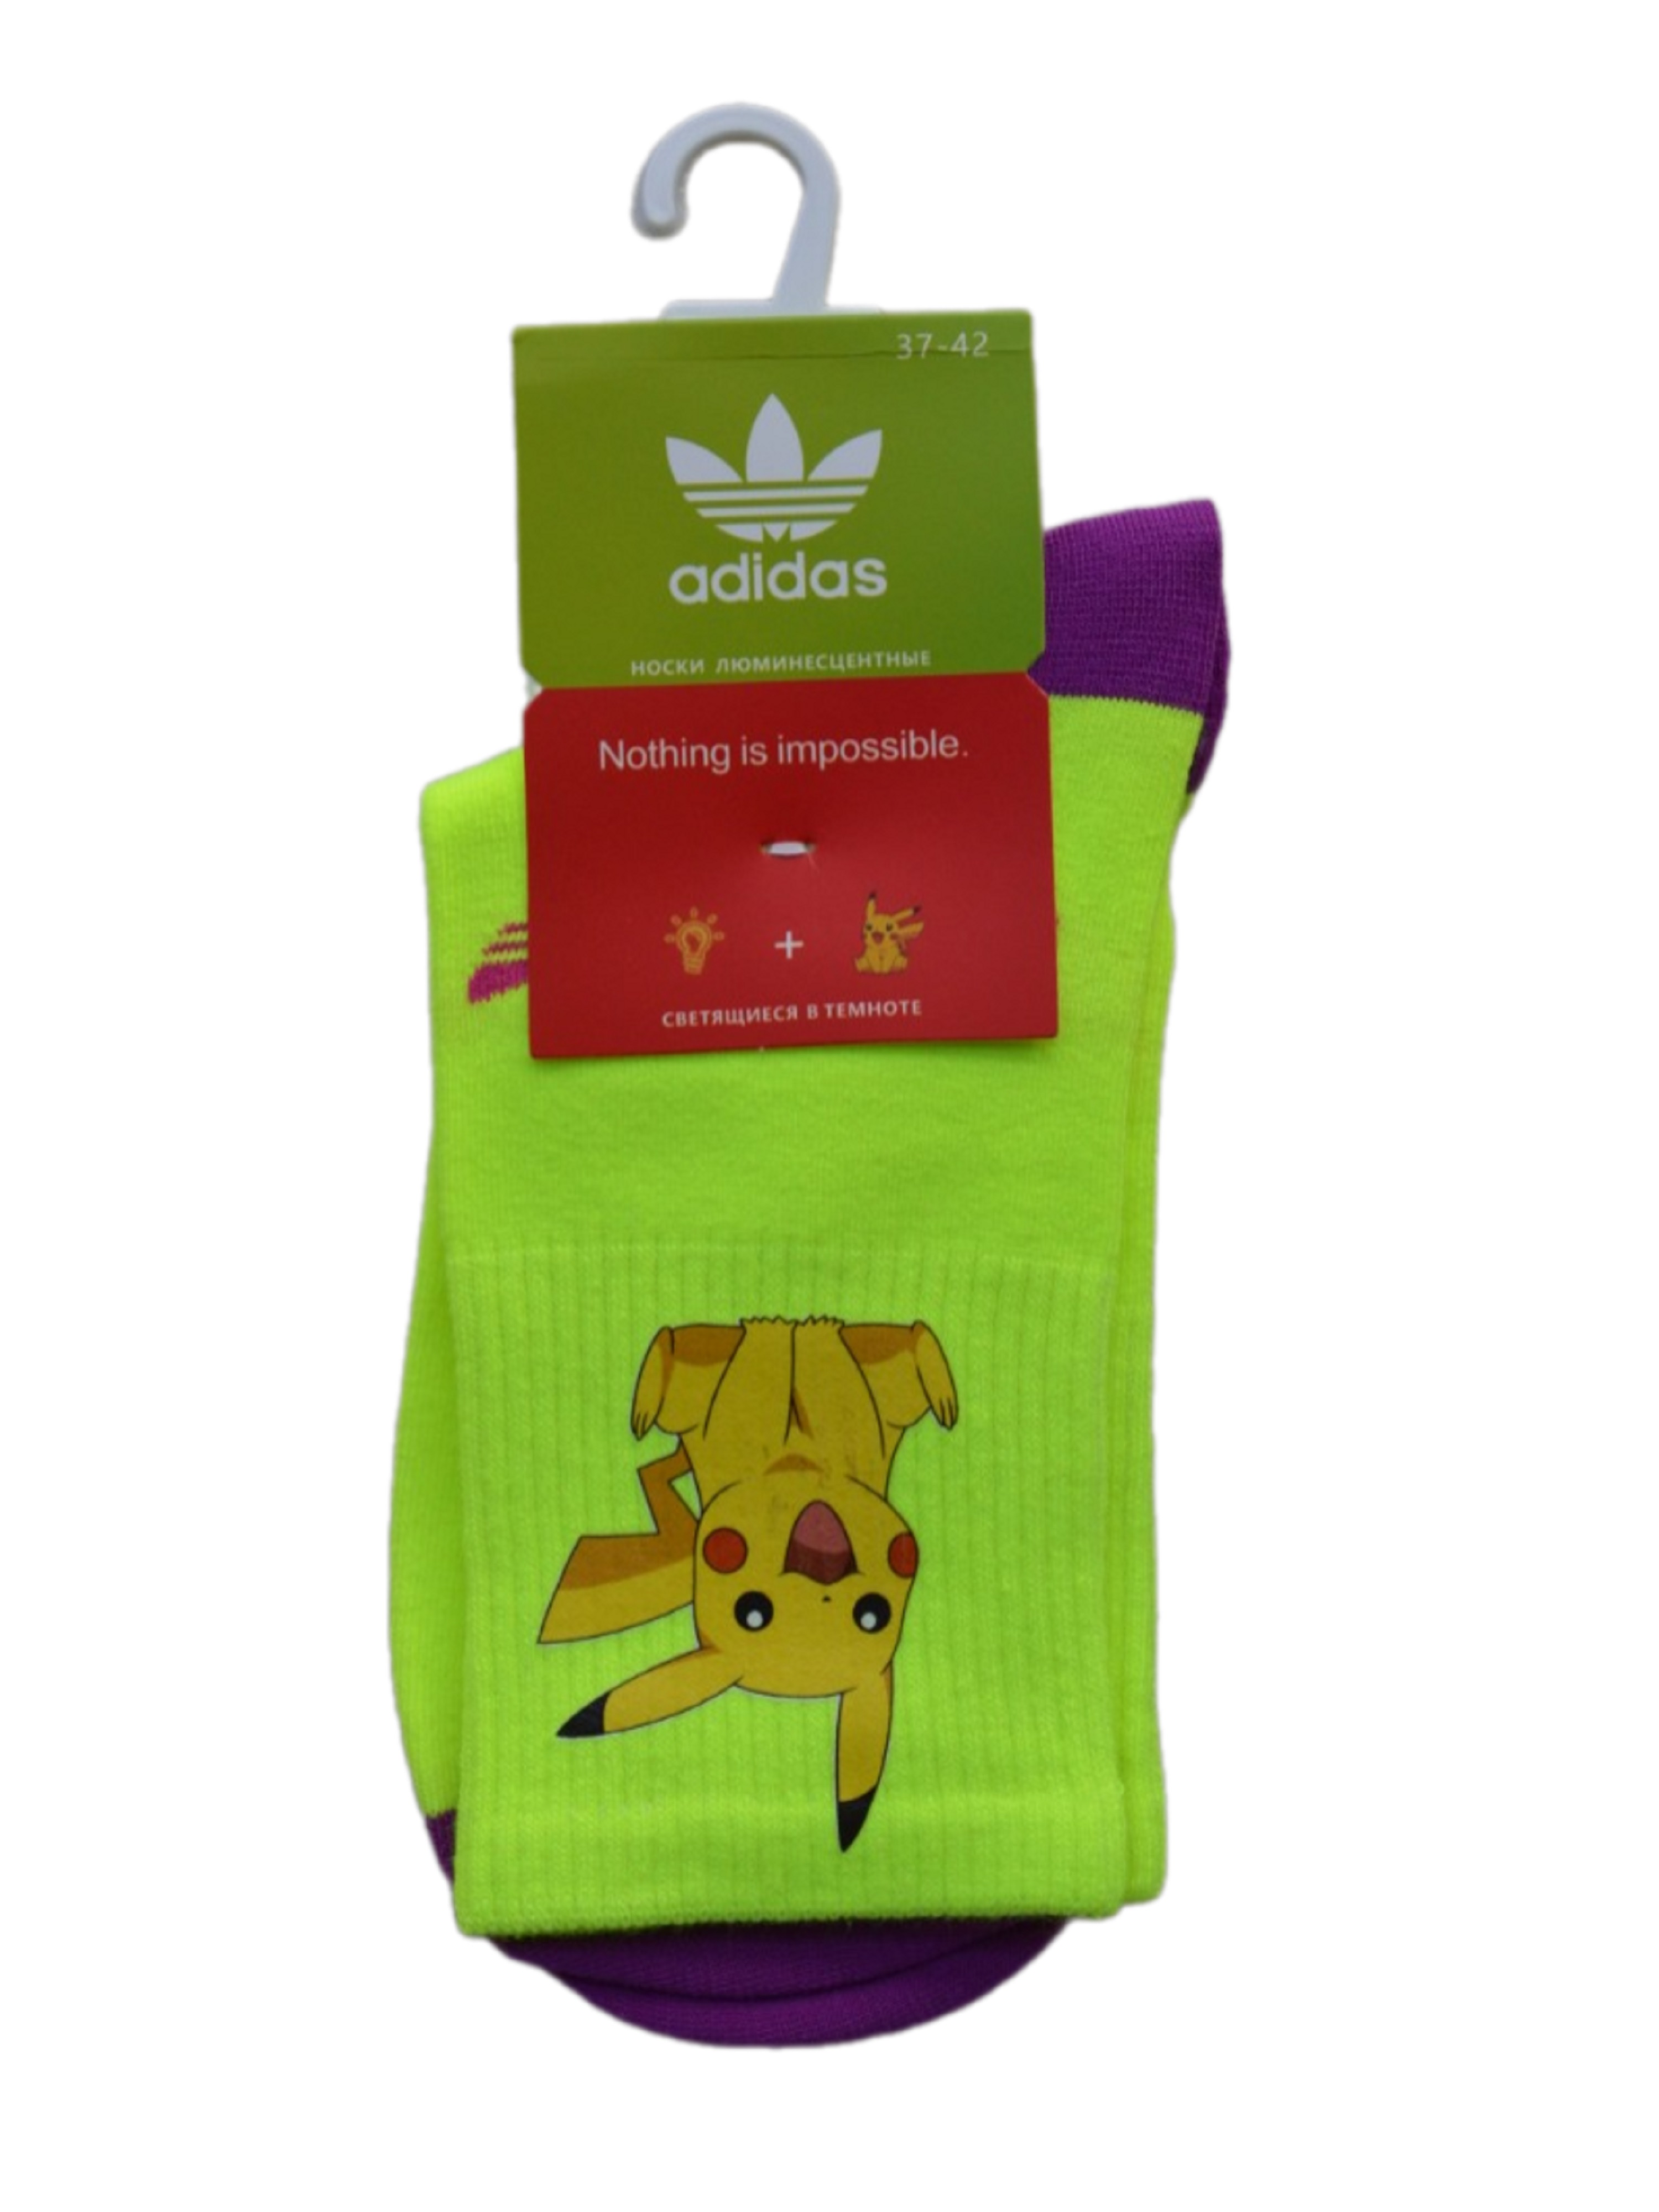 Носки женские Adidas AD-luminescent-Pokemon желтые 37-42